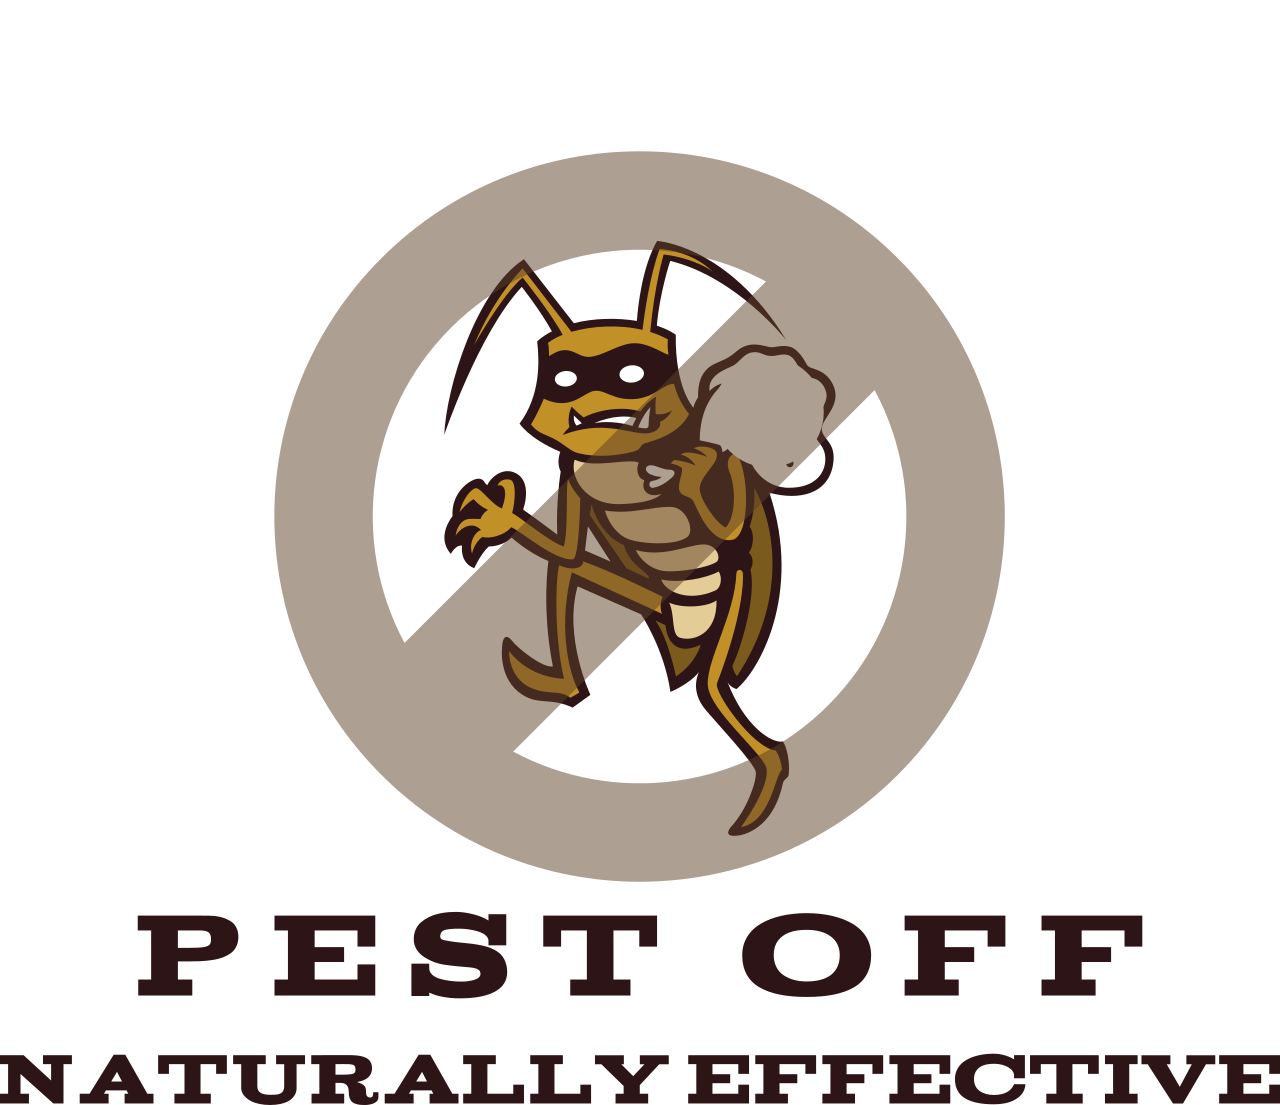 Pest Off's logo